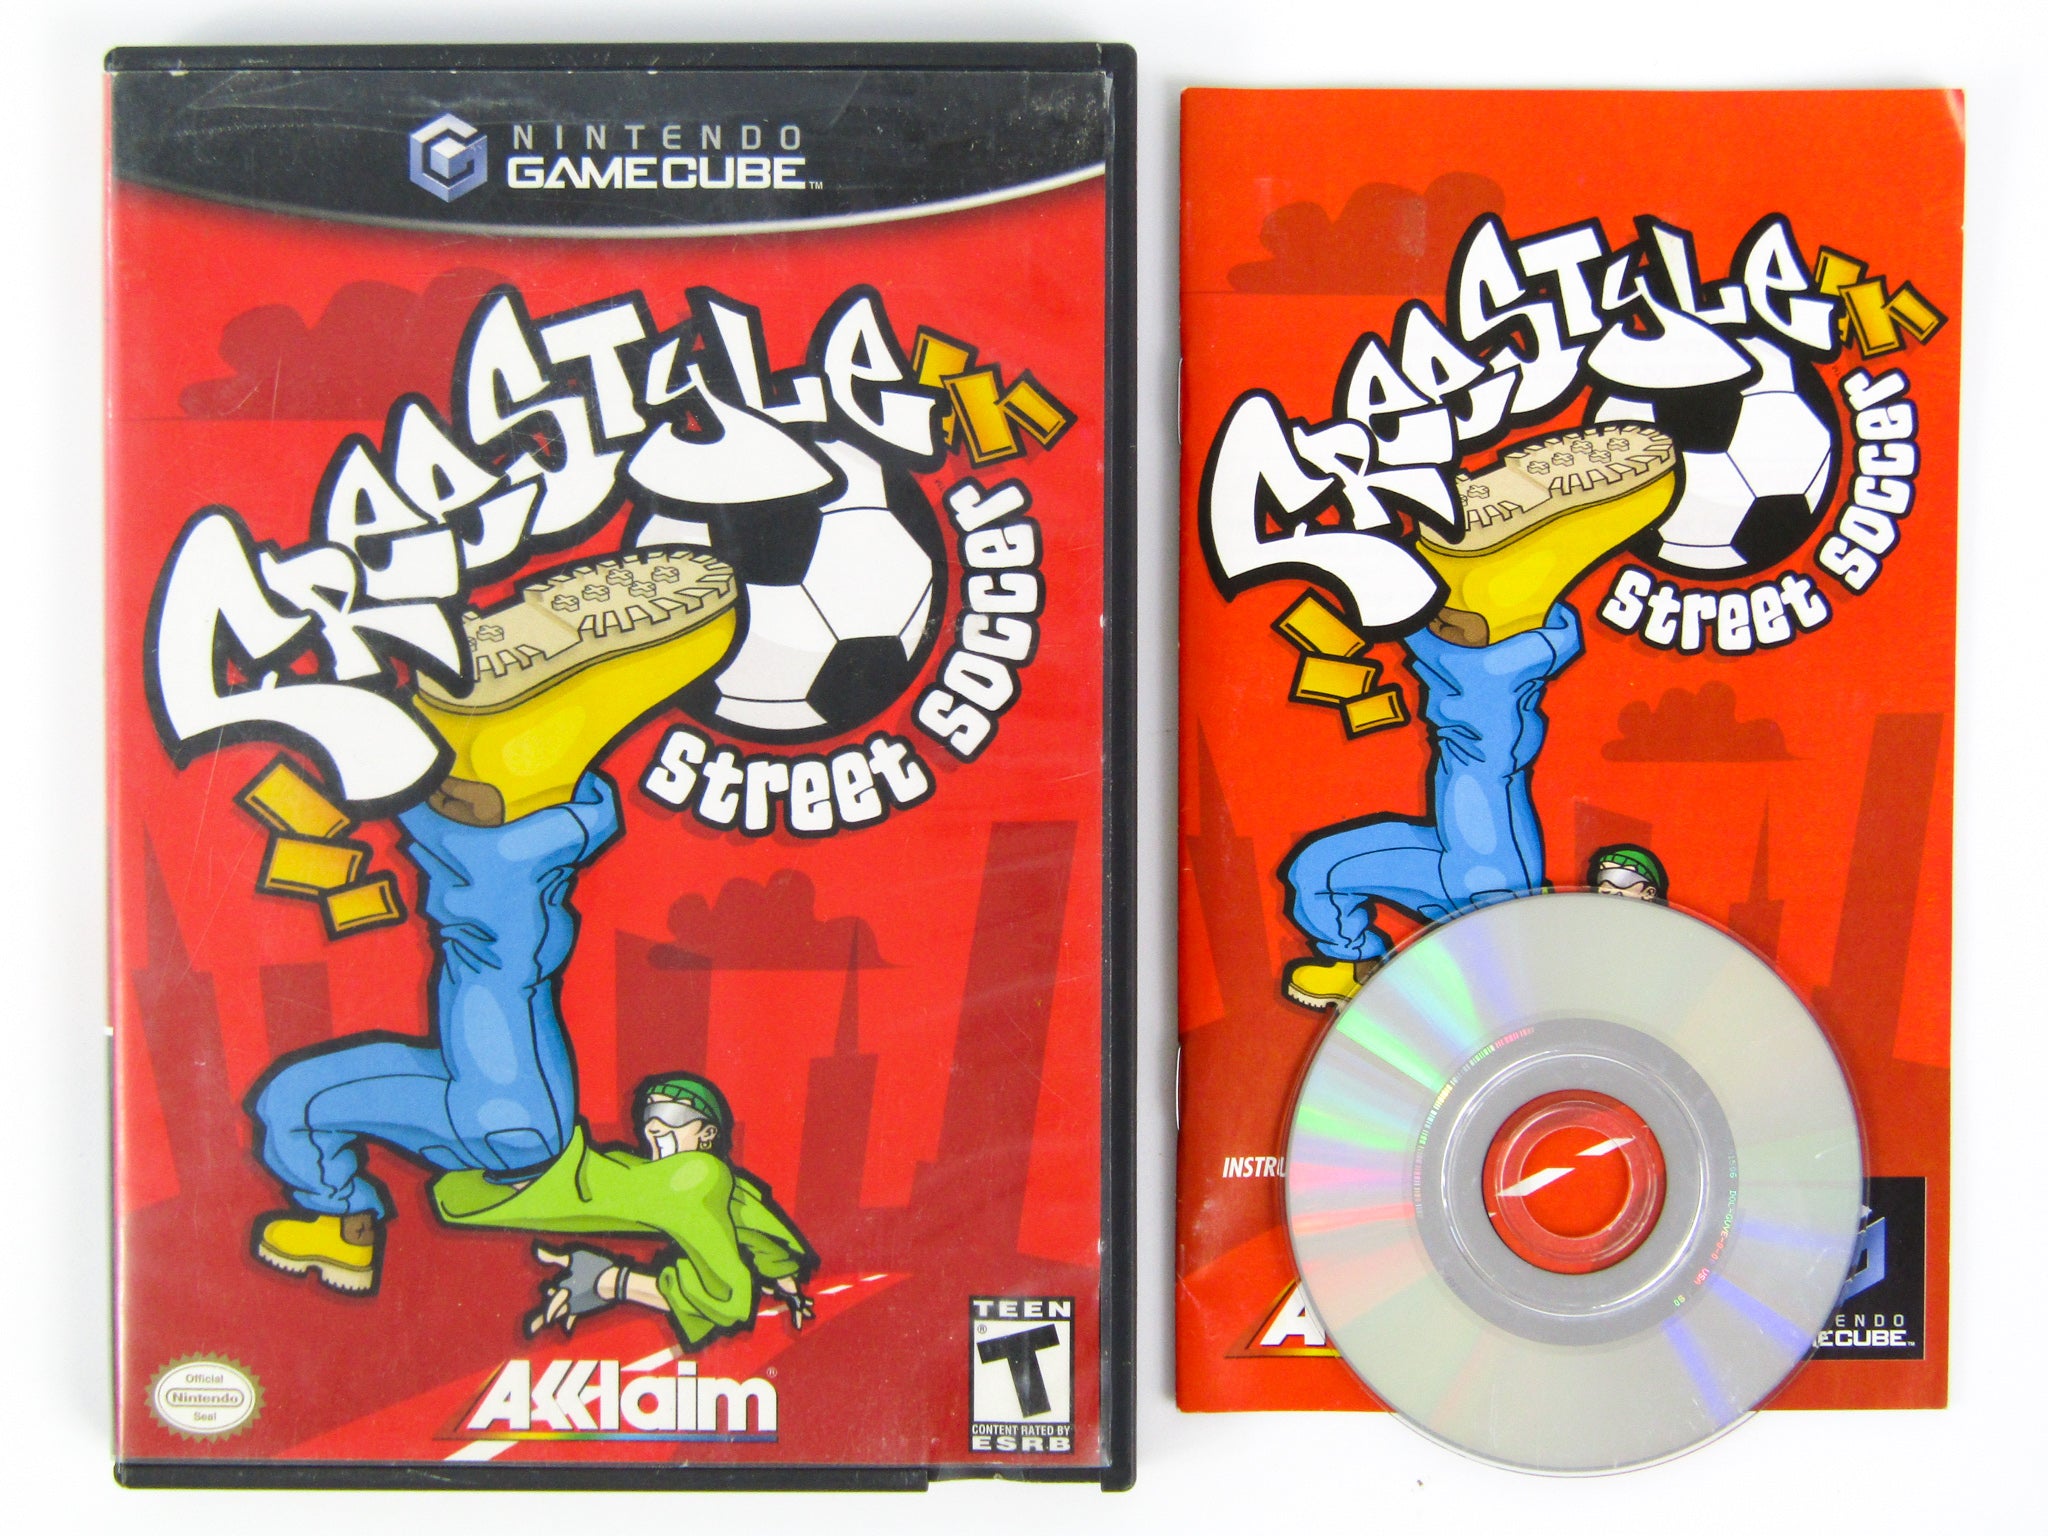 Freestyle MetalX para GameCube (2003)